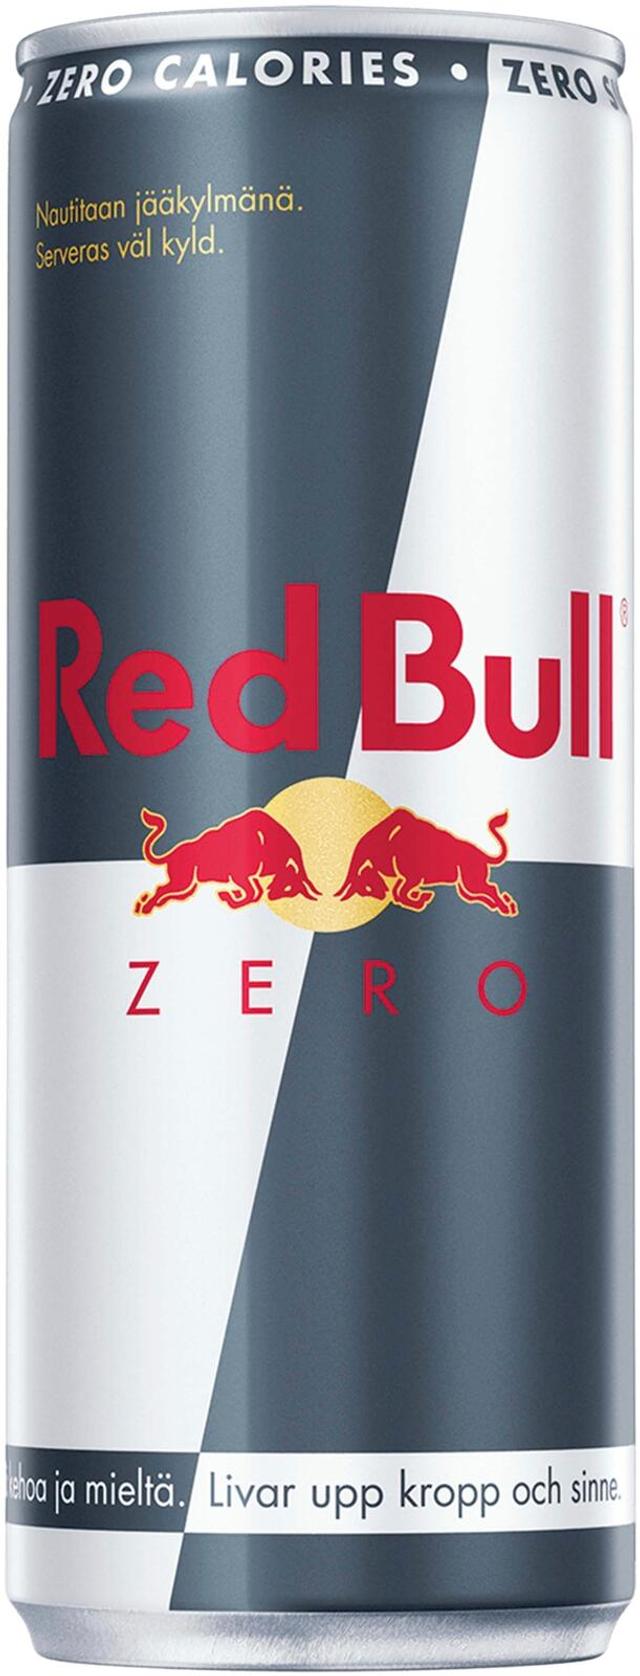 Red Bull Zero FI alu can 250ml